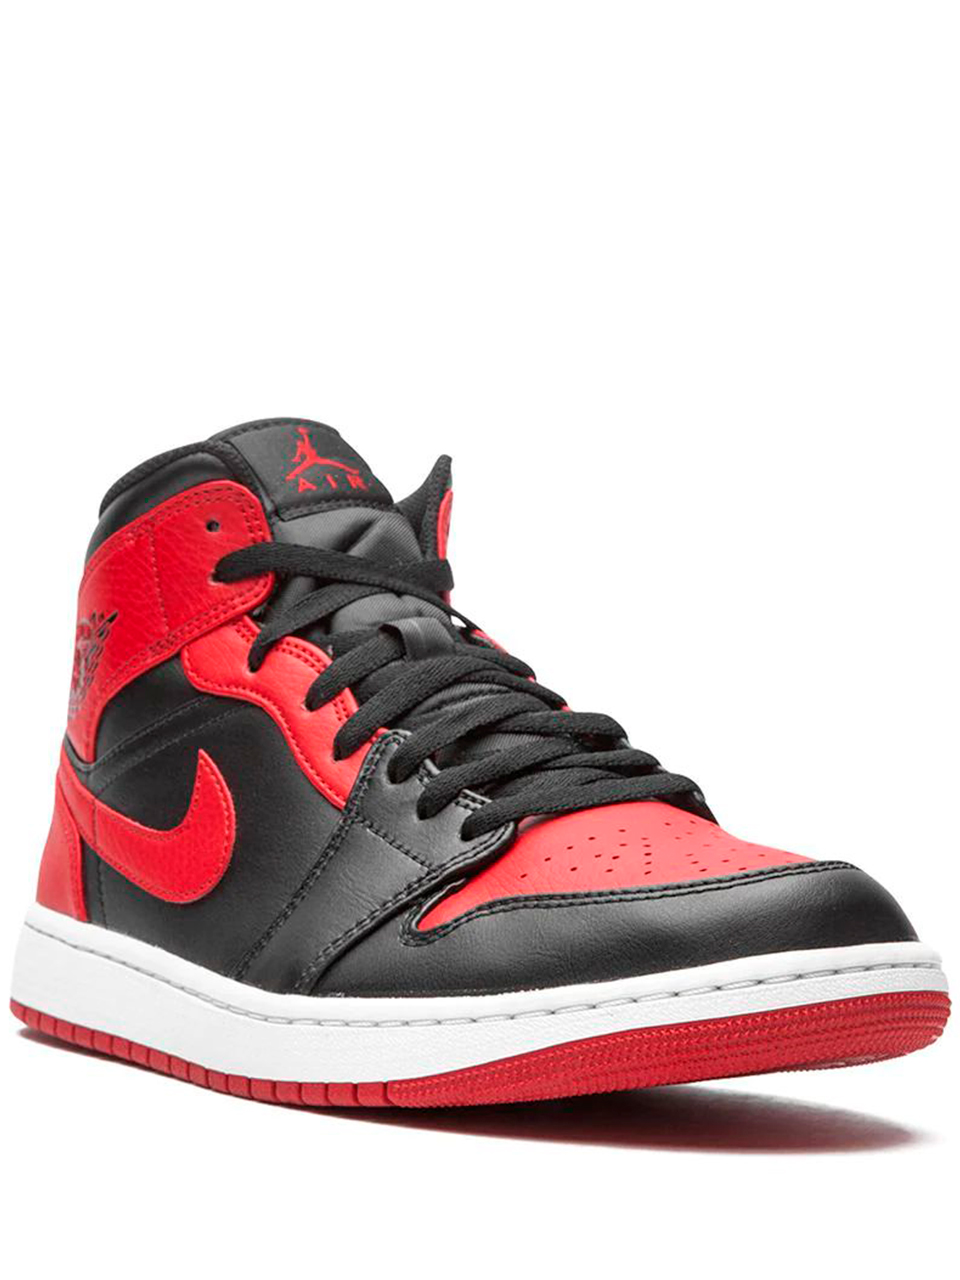 Imagem de: Tênis Nike Air Jordan 1 Mid Vermelho e Preto